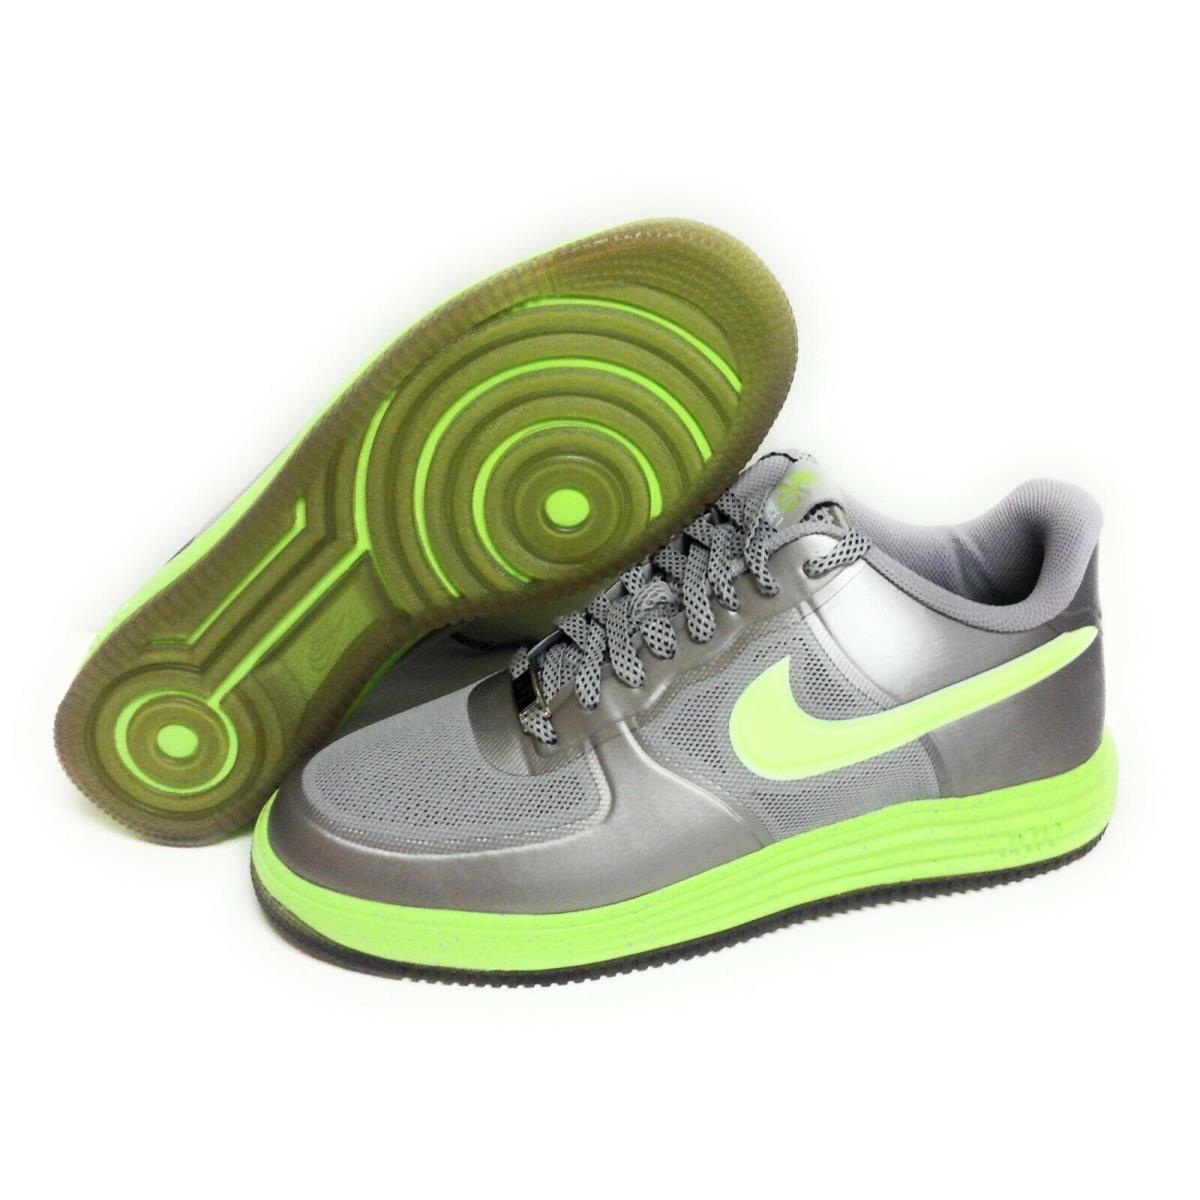 Mens Nike Lunar Force 1 Fuse 555027 002 Granite Grey Volt 2012 Sneakers Shoes - Grey, Manufacturer: